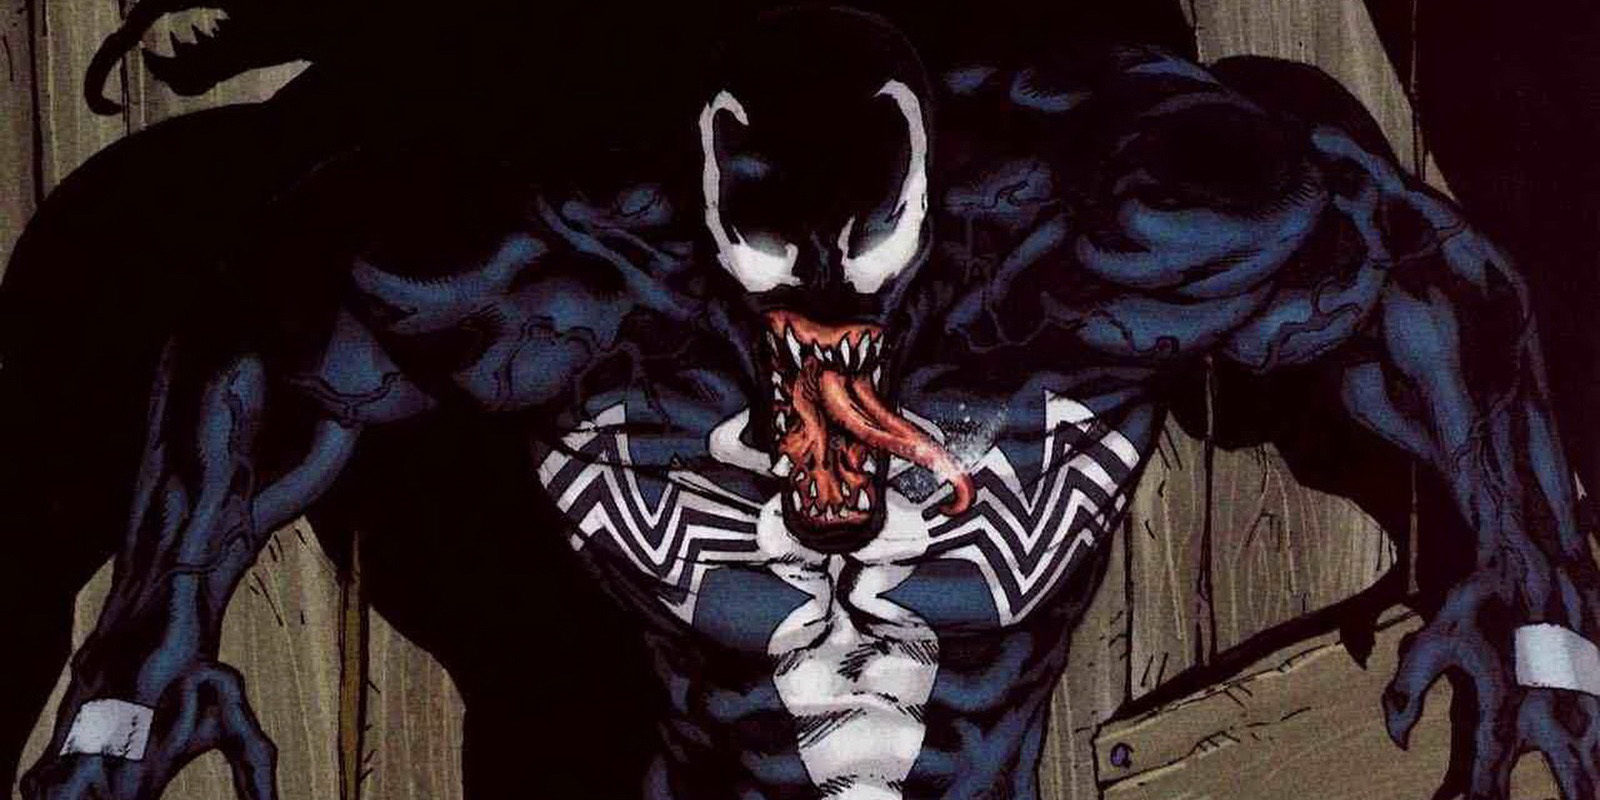 El creador de Venom opina que Tom Hardy es una buena elección